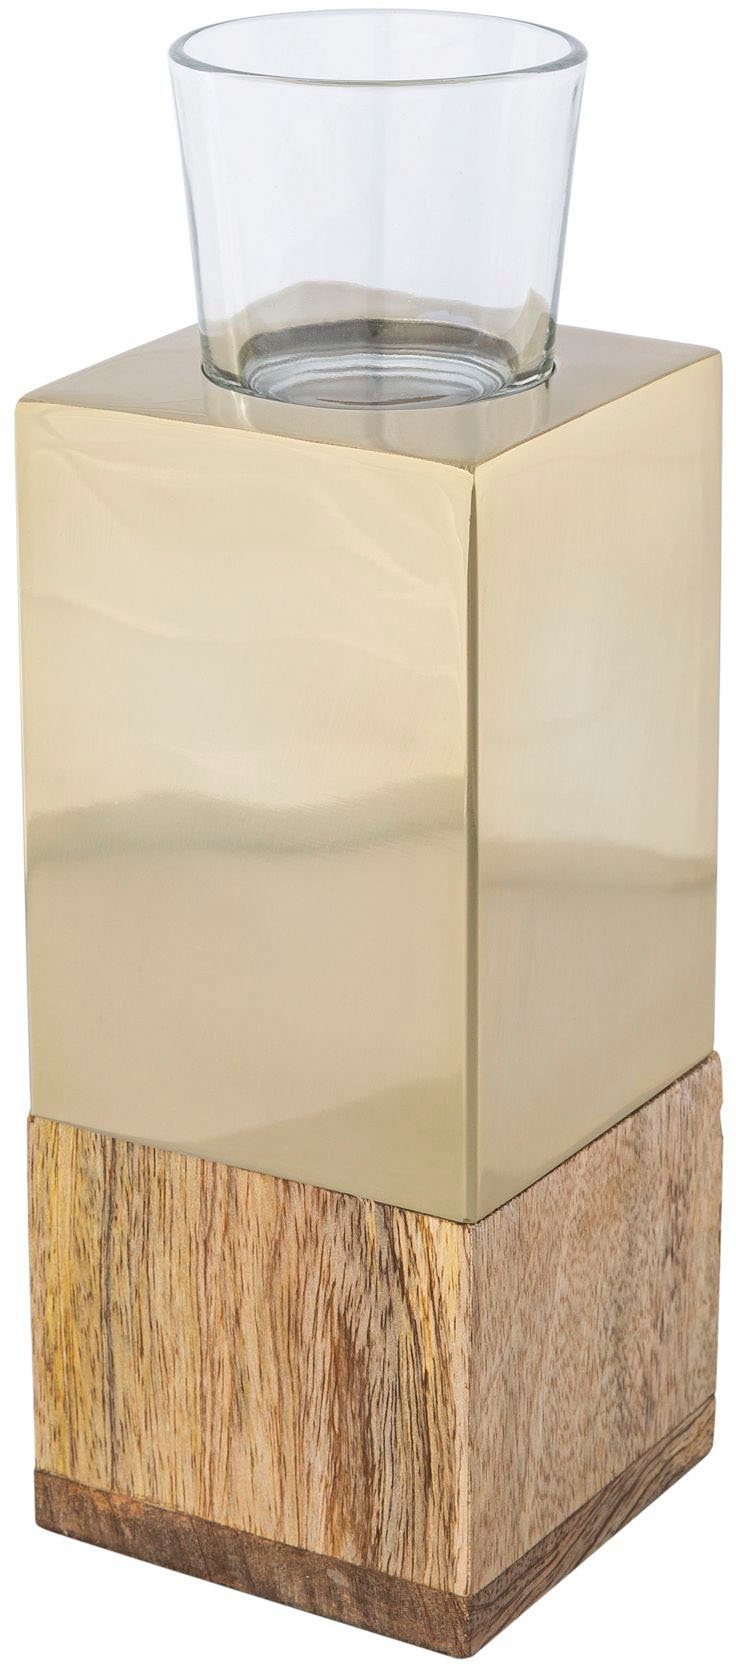 Creativ home Teelichthalter Kerzenhalter Tower (1 St), aus Holz, Edelstahl und Glas champagnerfarben | Teelichthalter